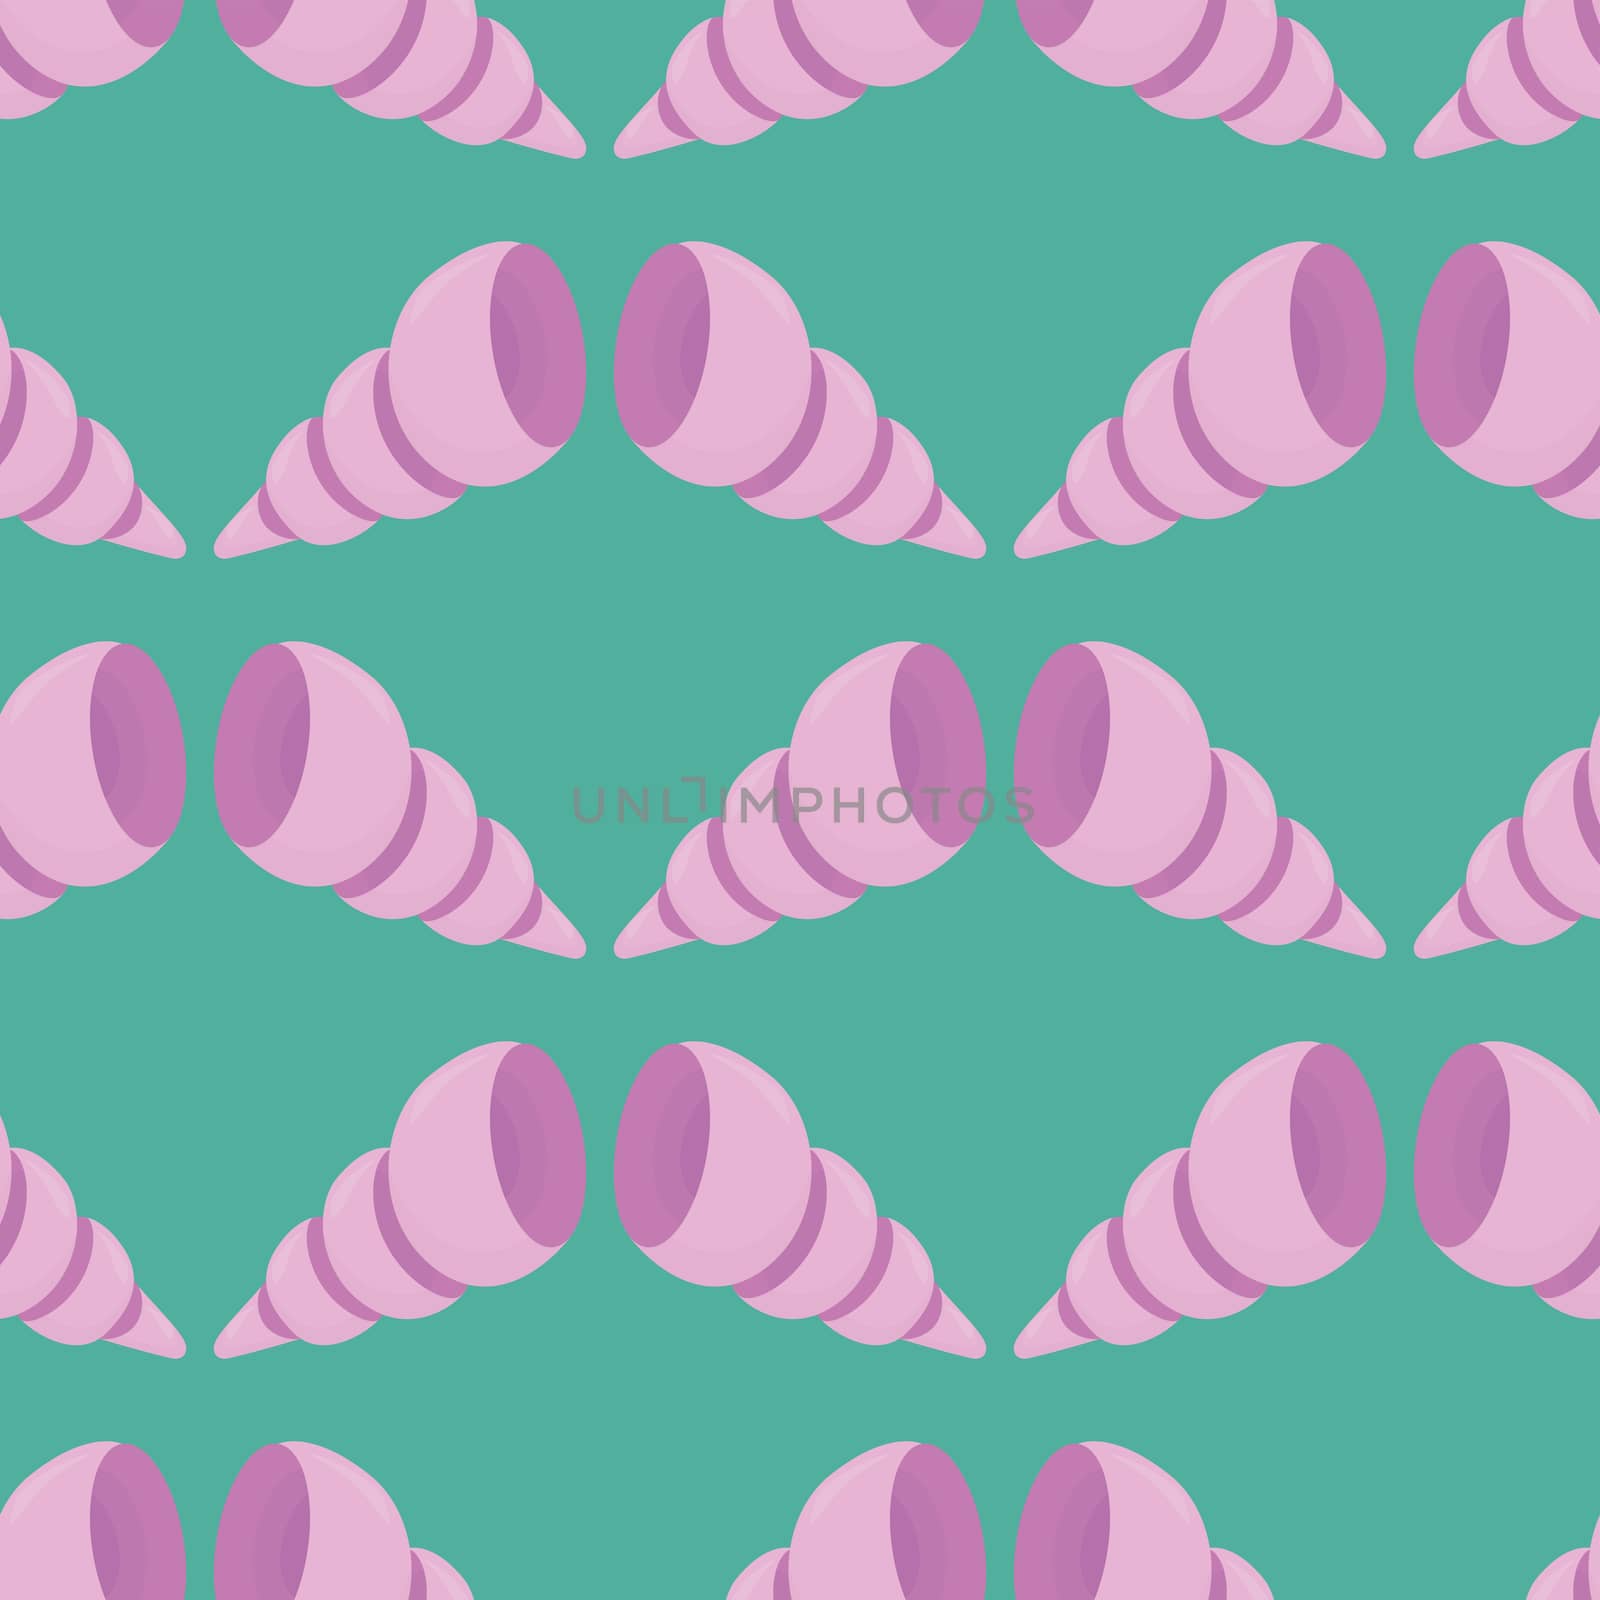 Ocean shells pattern , illustration, vector on white background by Morphart